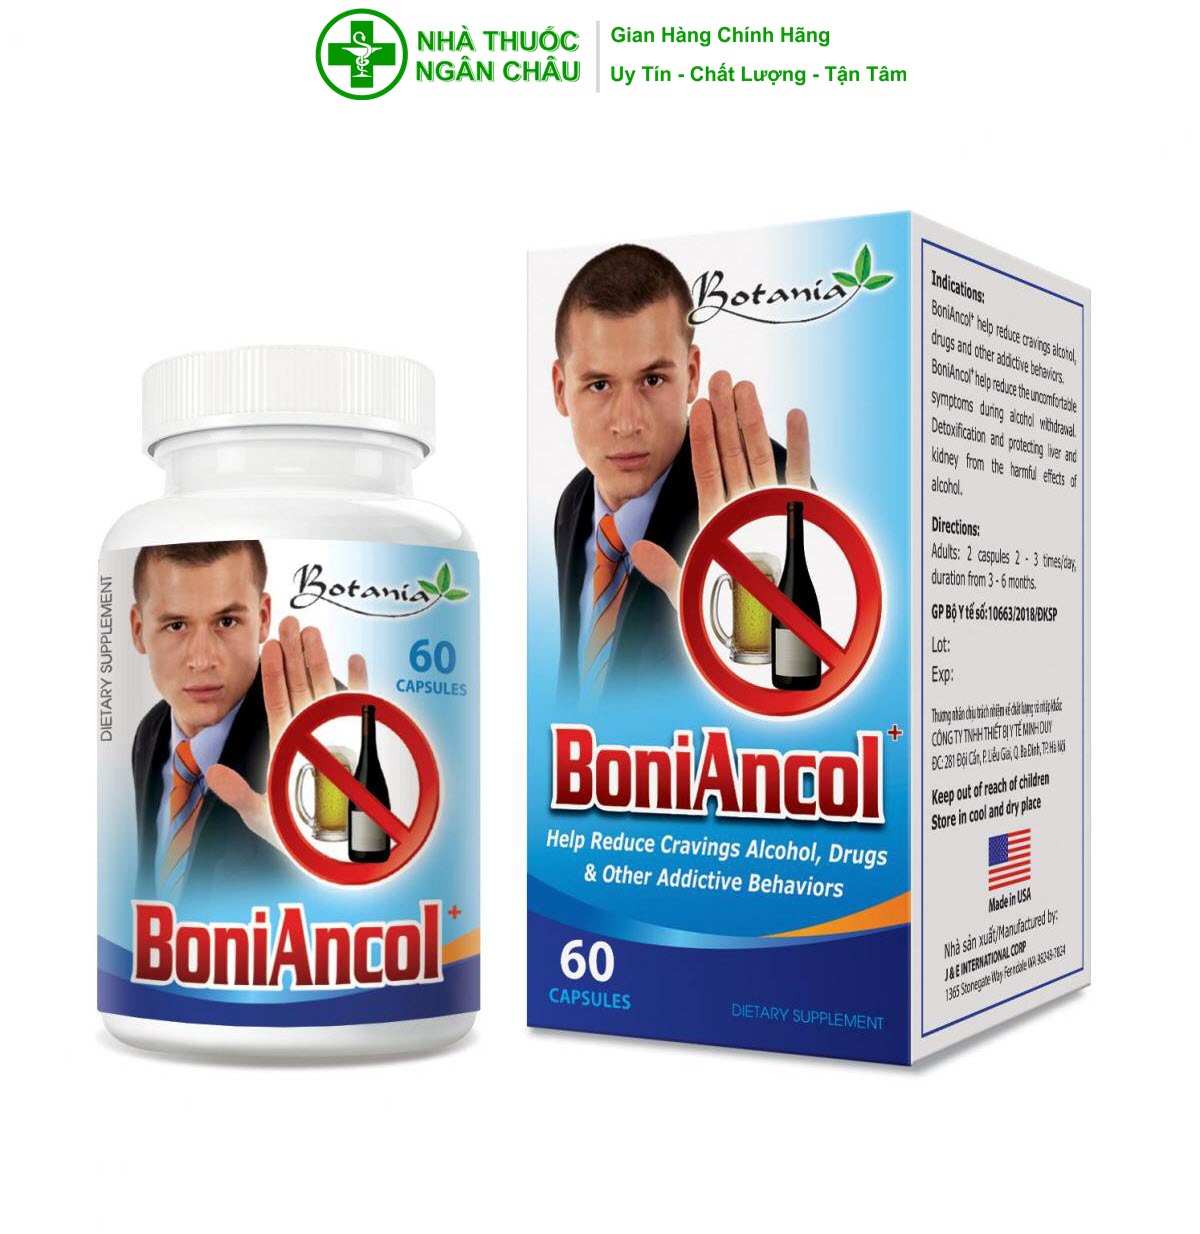 Viên Uống BoniAncol+ BOTANIA - Made In USA - Giúp bảo vệ gan, thận khỏi tác hại của rượu, giảm say rượu (giảm đau đầu, chóng mặt, buồn nôn, ói mửa, khó chịu)